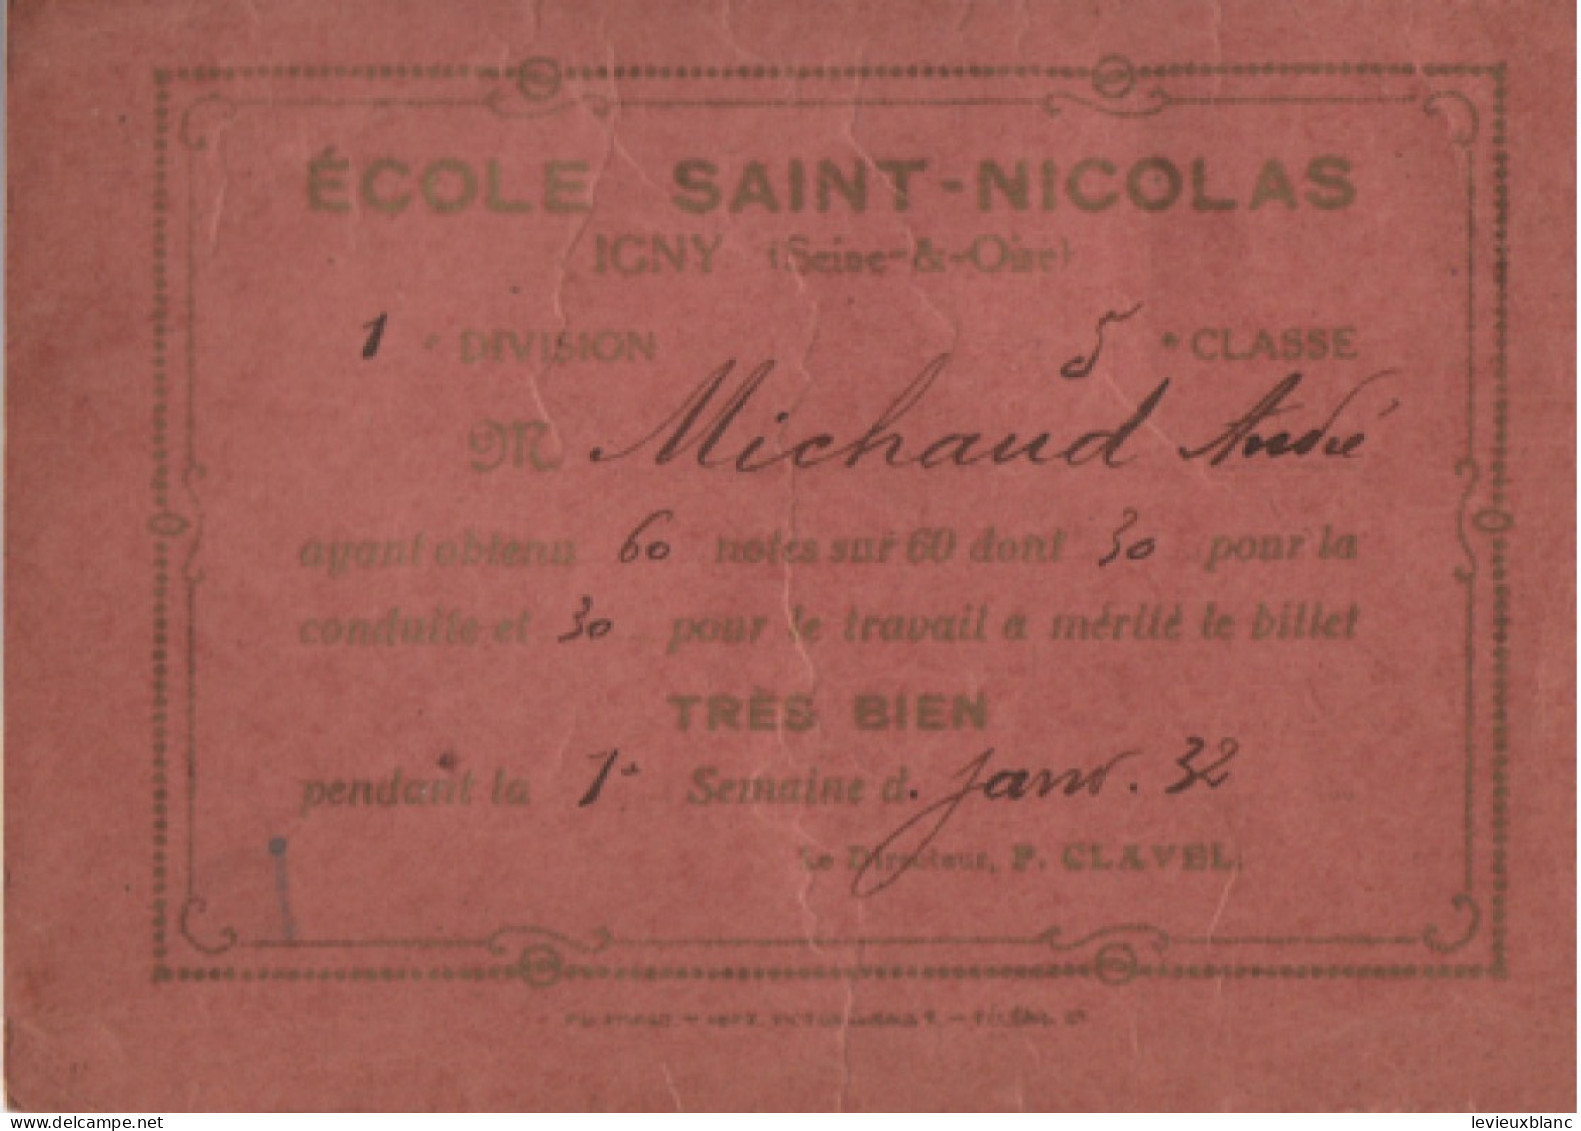 5 Billets scolaires/ " Très Bien " / Ecole Saint-Nicolas / IGNY seine & Oise/Janvier - Avril 1932                 CAH377